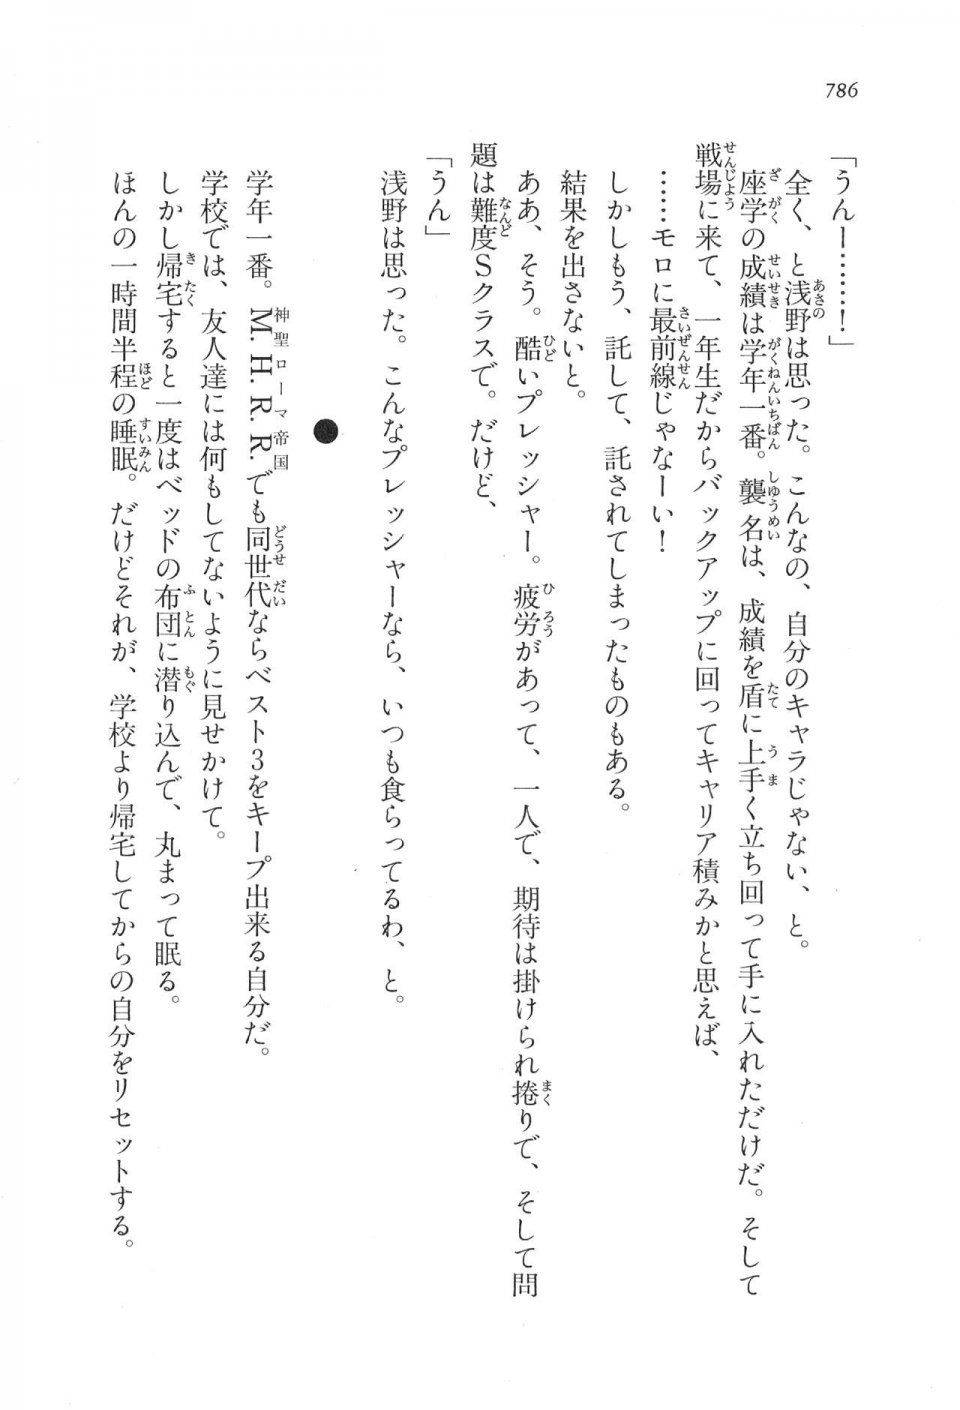 Kyoukai Senjou no Horizon LN Vol 17(7B) - Photo #788